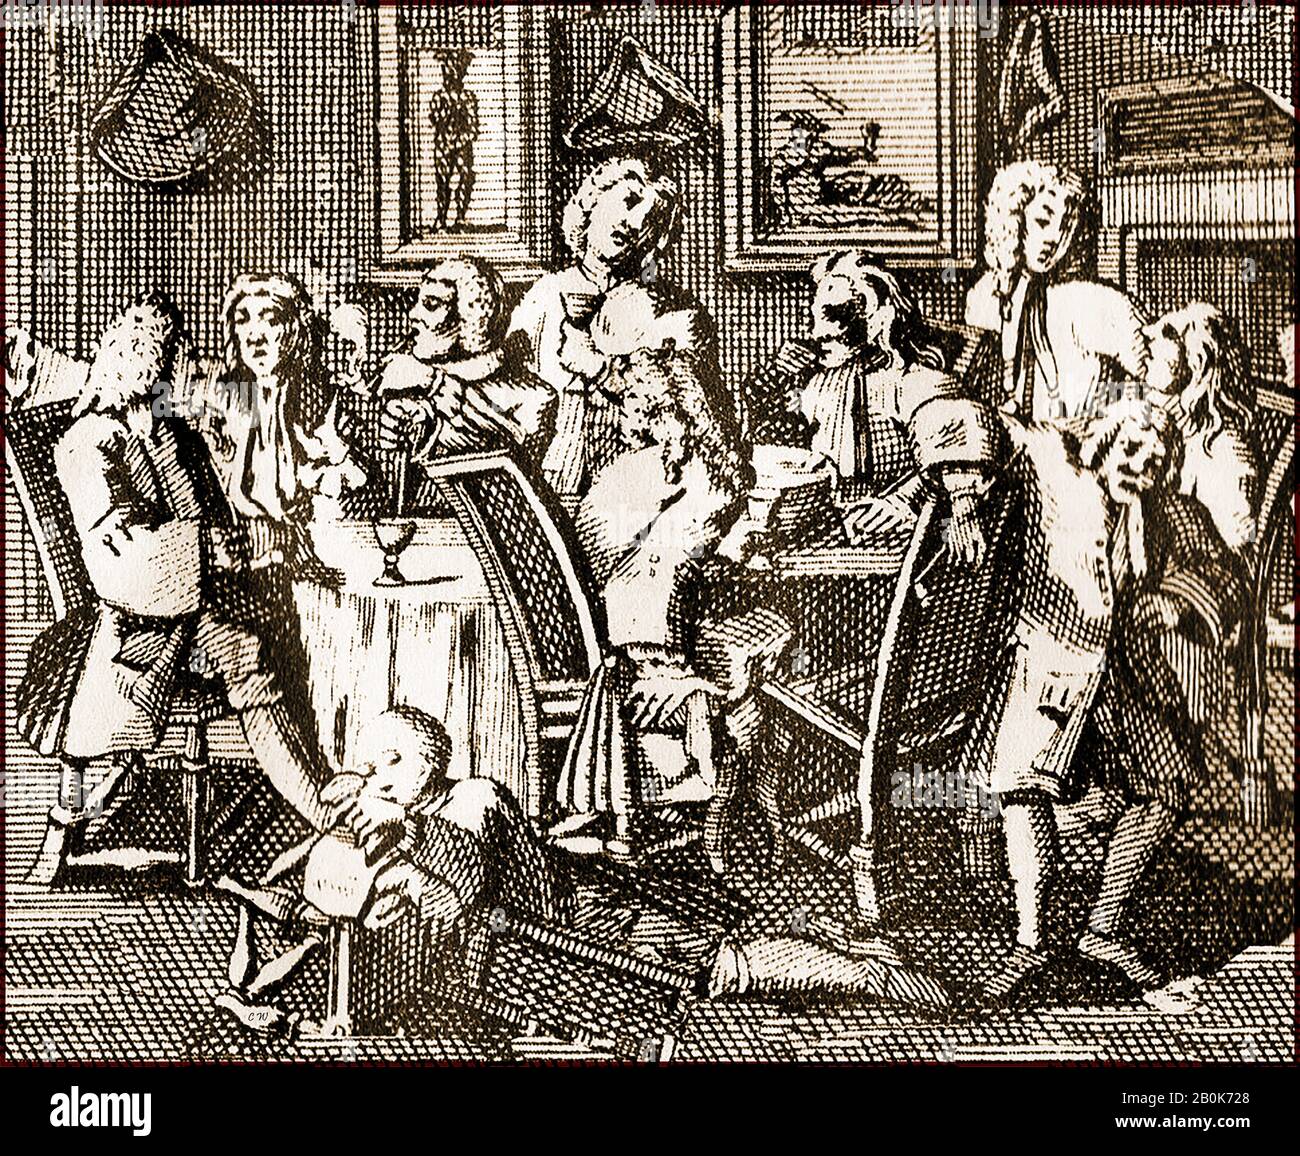 Gravur aus dem 18. Jahrhundert - Richard Lee in der "Golden Tobacco Roll" in der Panton Street, in der Nähe von Leicester Fields, London UK (nach einer Gravur, die William Hogarth zugeschrieben wird). Das Design wurde in einer Visitenkarte für Richard Lee verwendet, den Tabakhändler in den 1700-er Jahren Stockfoto